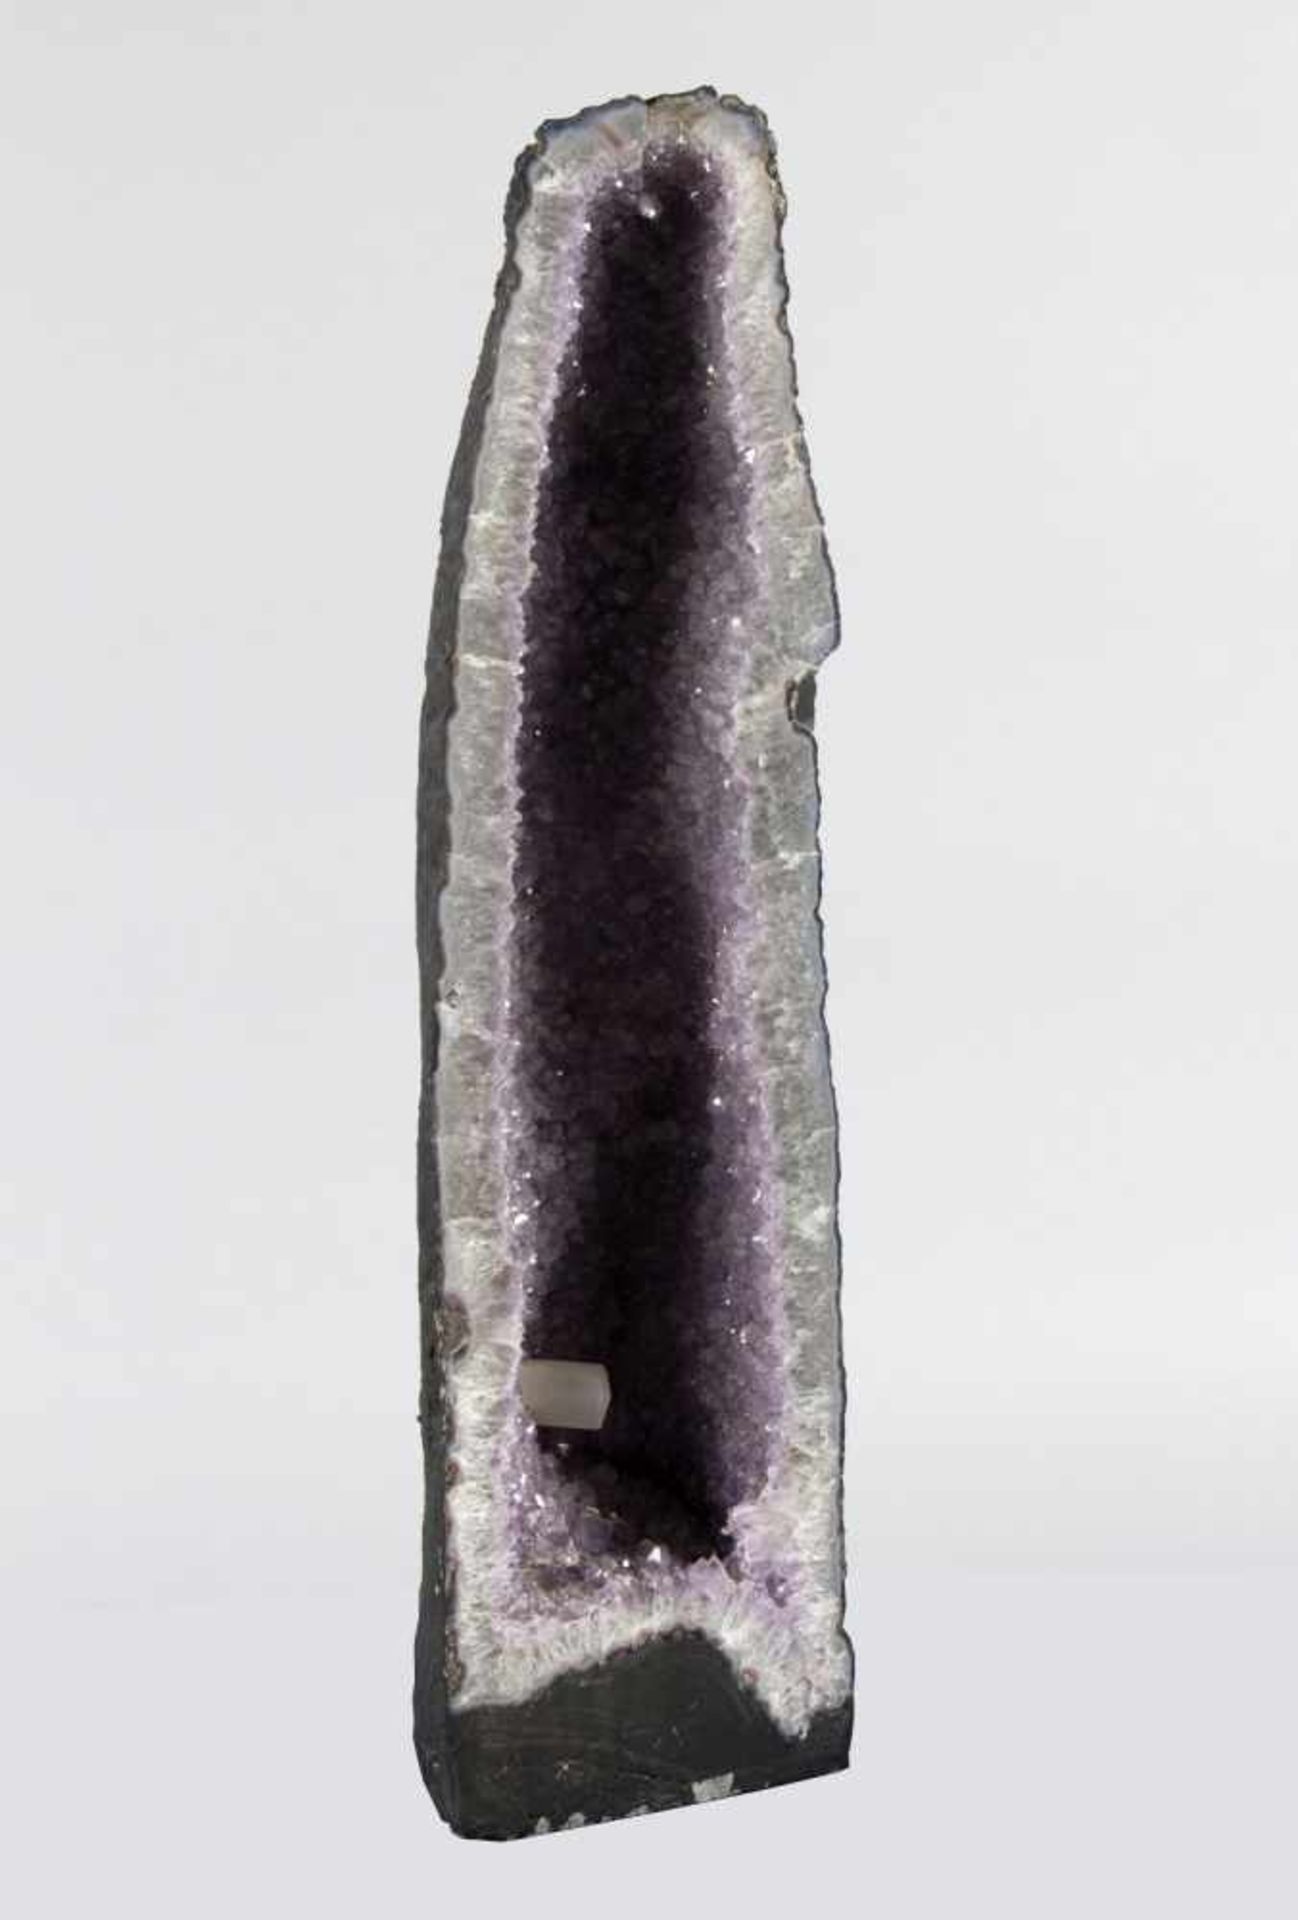 AmethystdruseAuskristallisierte Druse, mittig von fliederfarbenen Amethysten und Calciten überzogen.